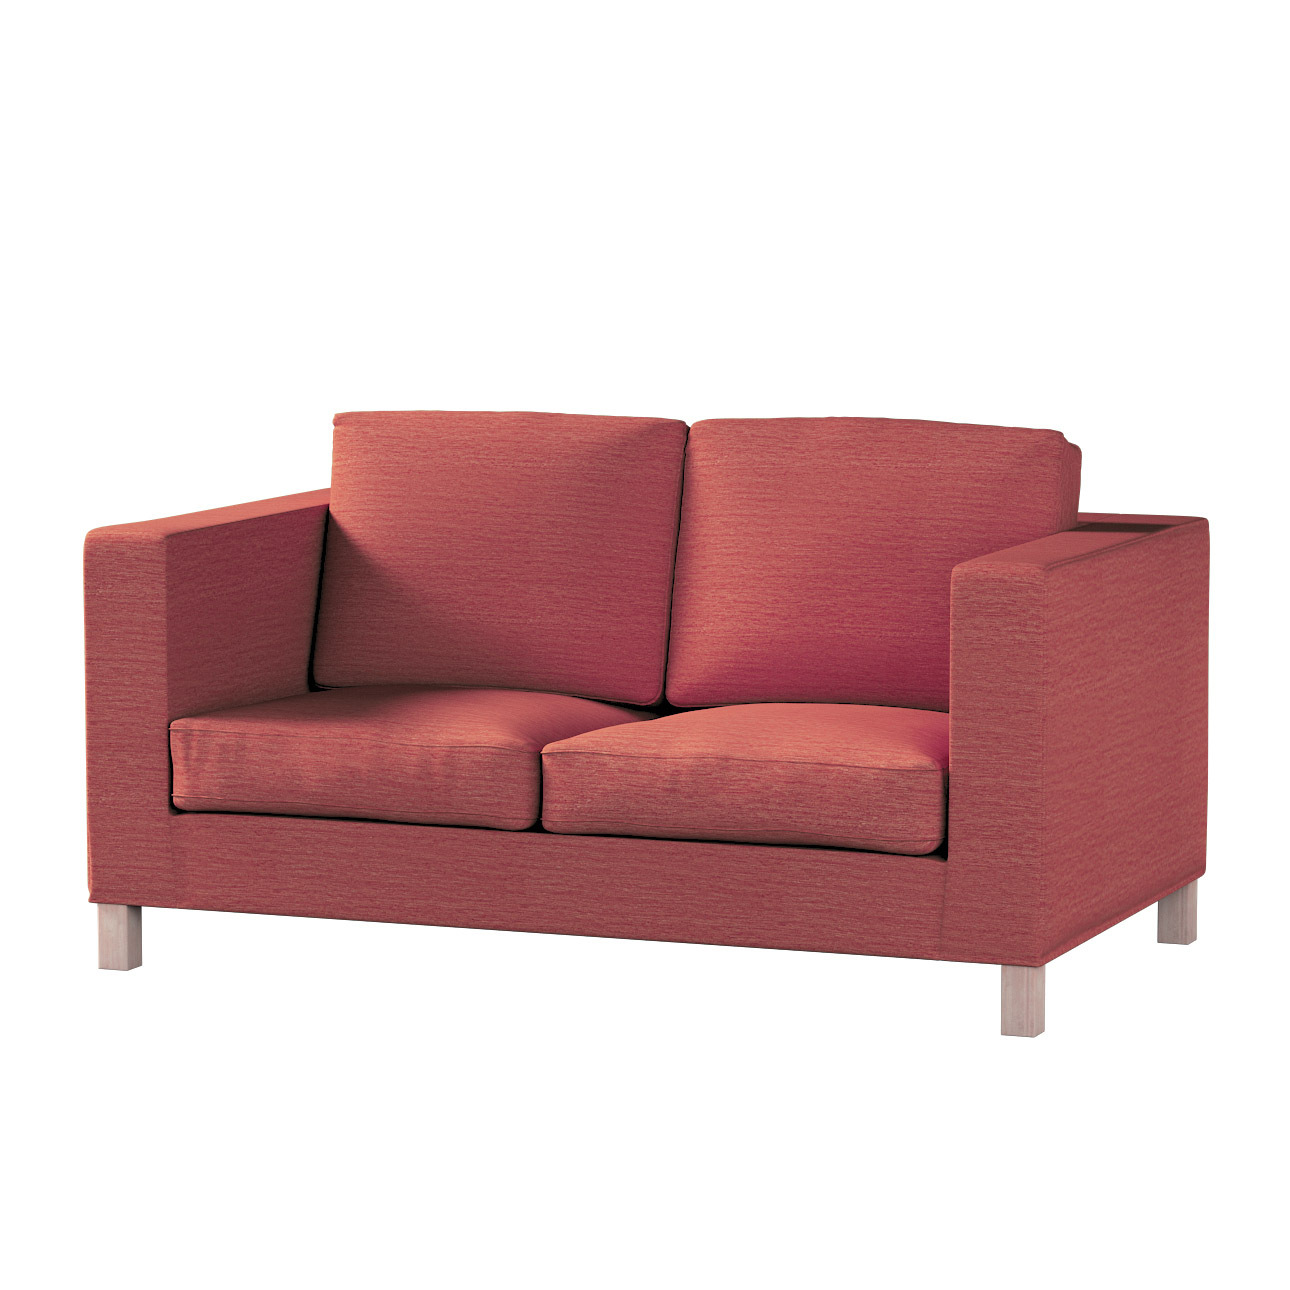 Bezug für Karlanda 2-Sitzer Sofa nicht ausklappbar, kurz, ziegelrot, 60cm x günstig online kaufen